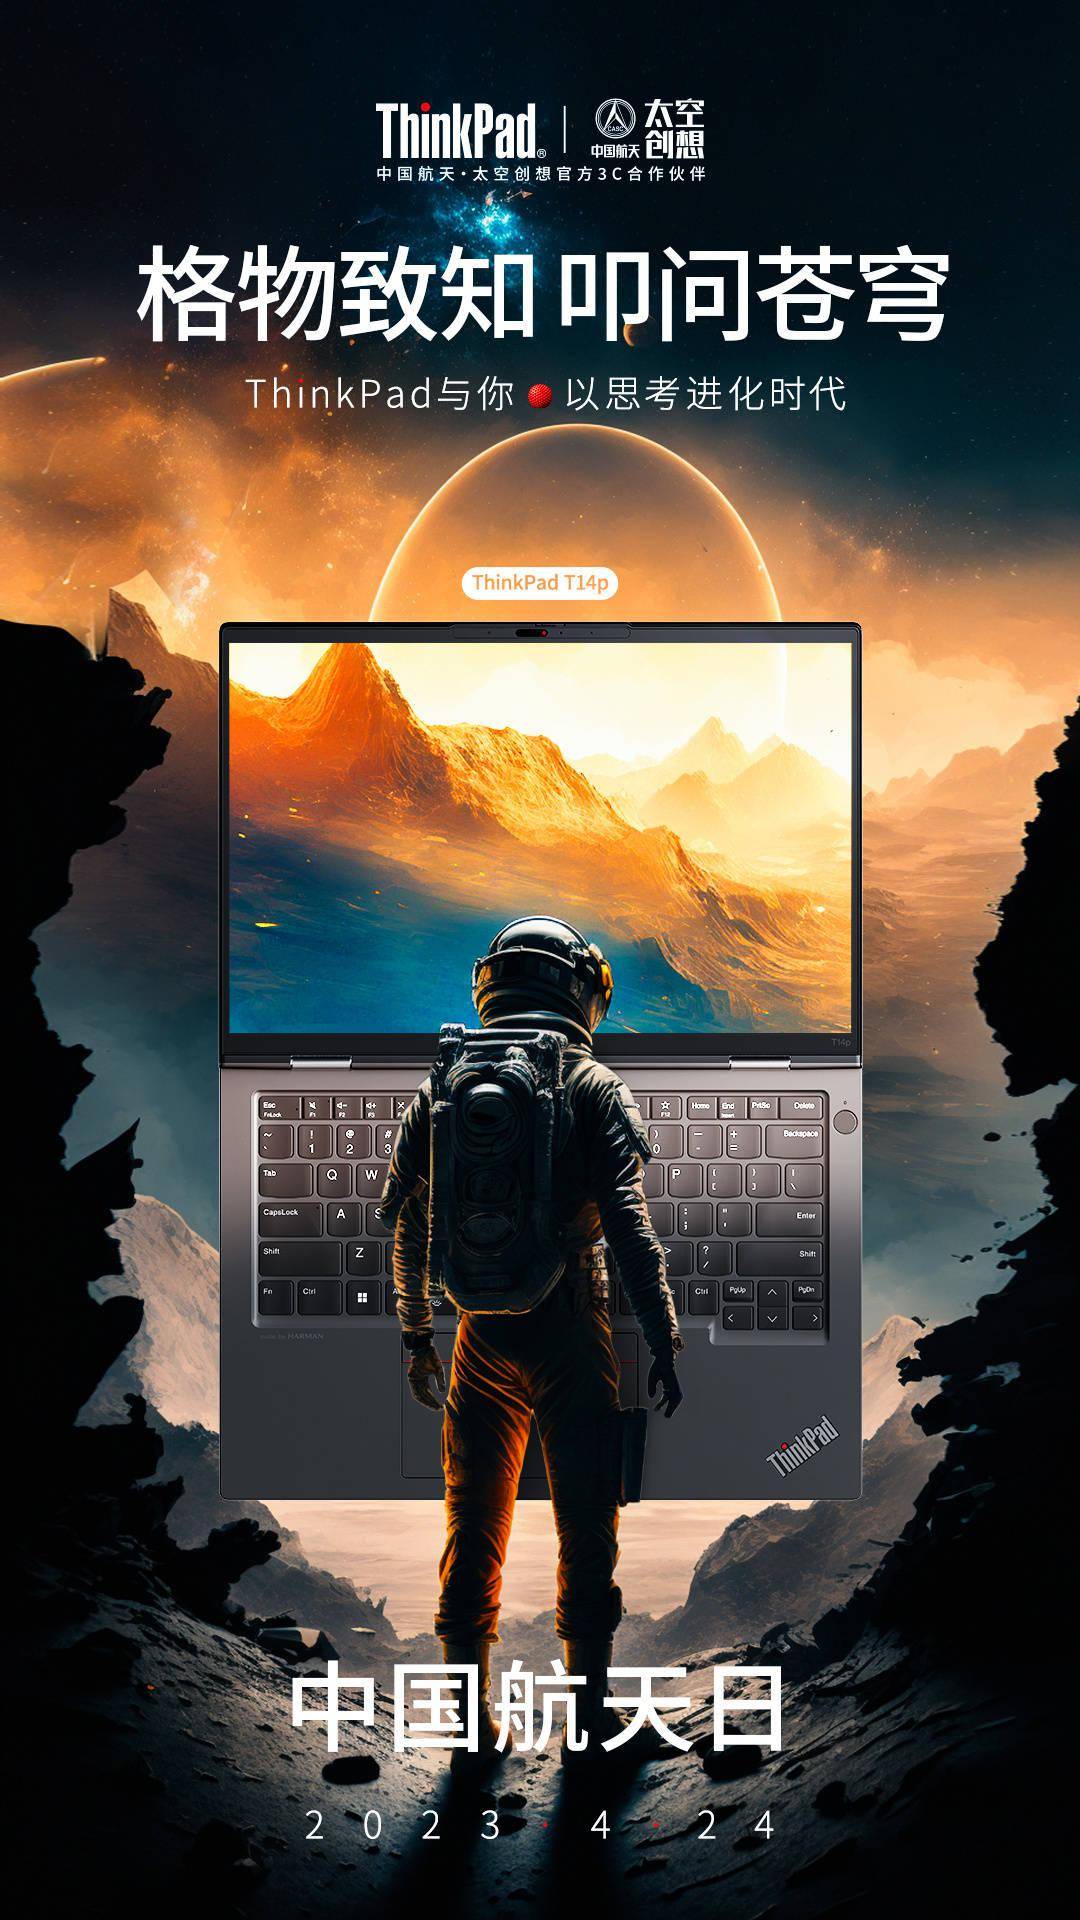 联想ThinkPad 2023笔记本什么时候发布 联想ThinkPad 2023笔记本发布时间一览